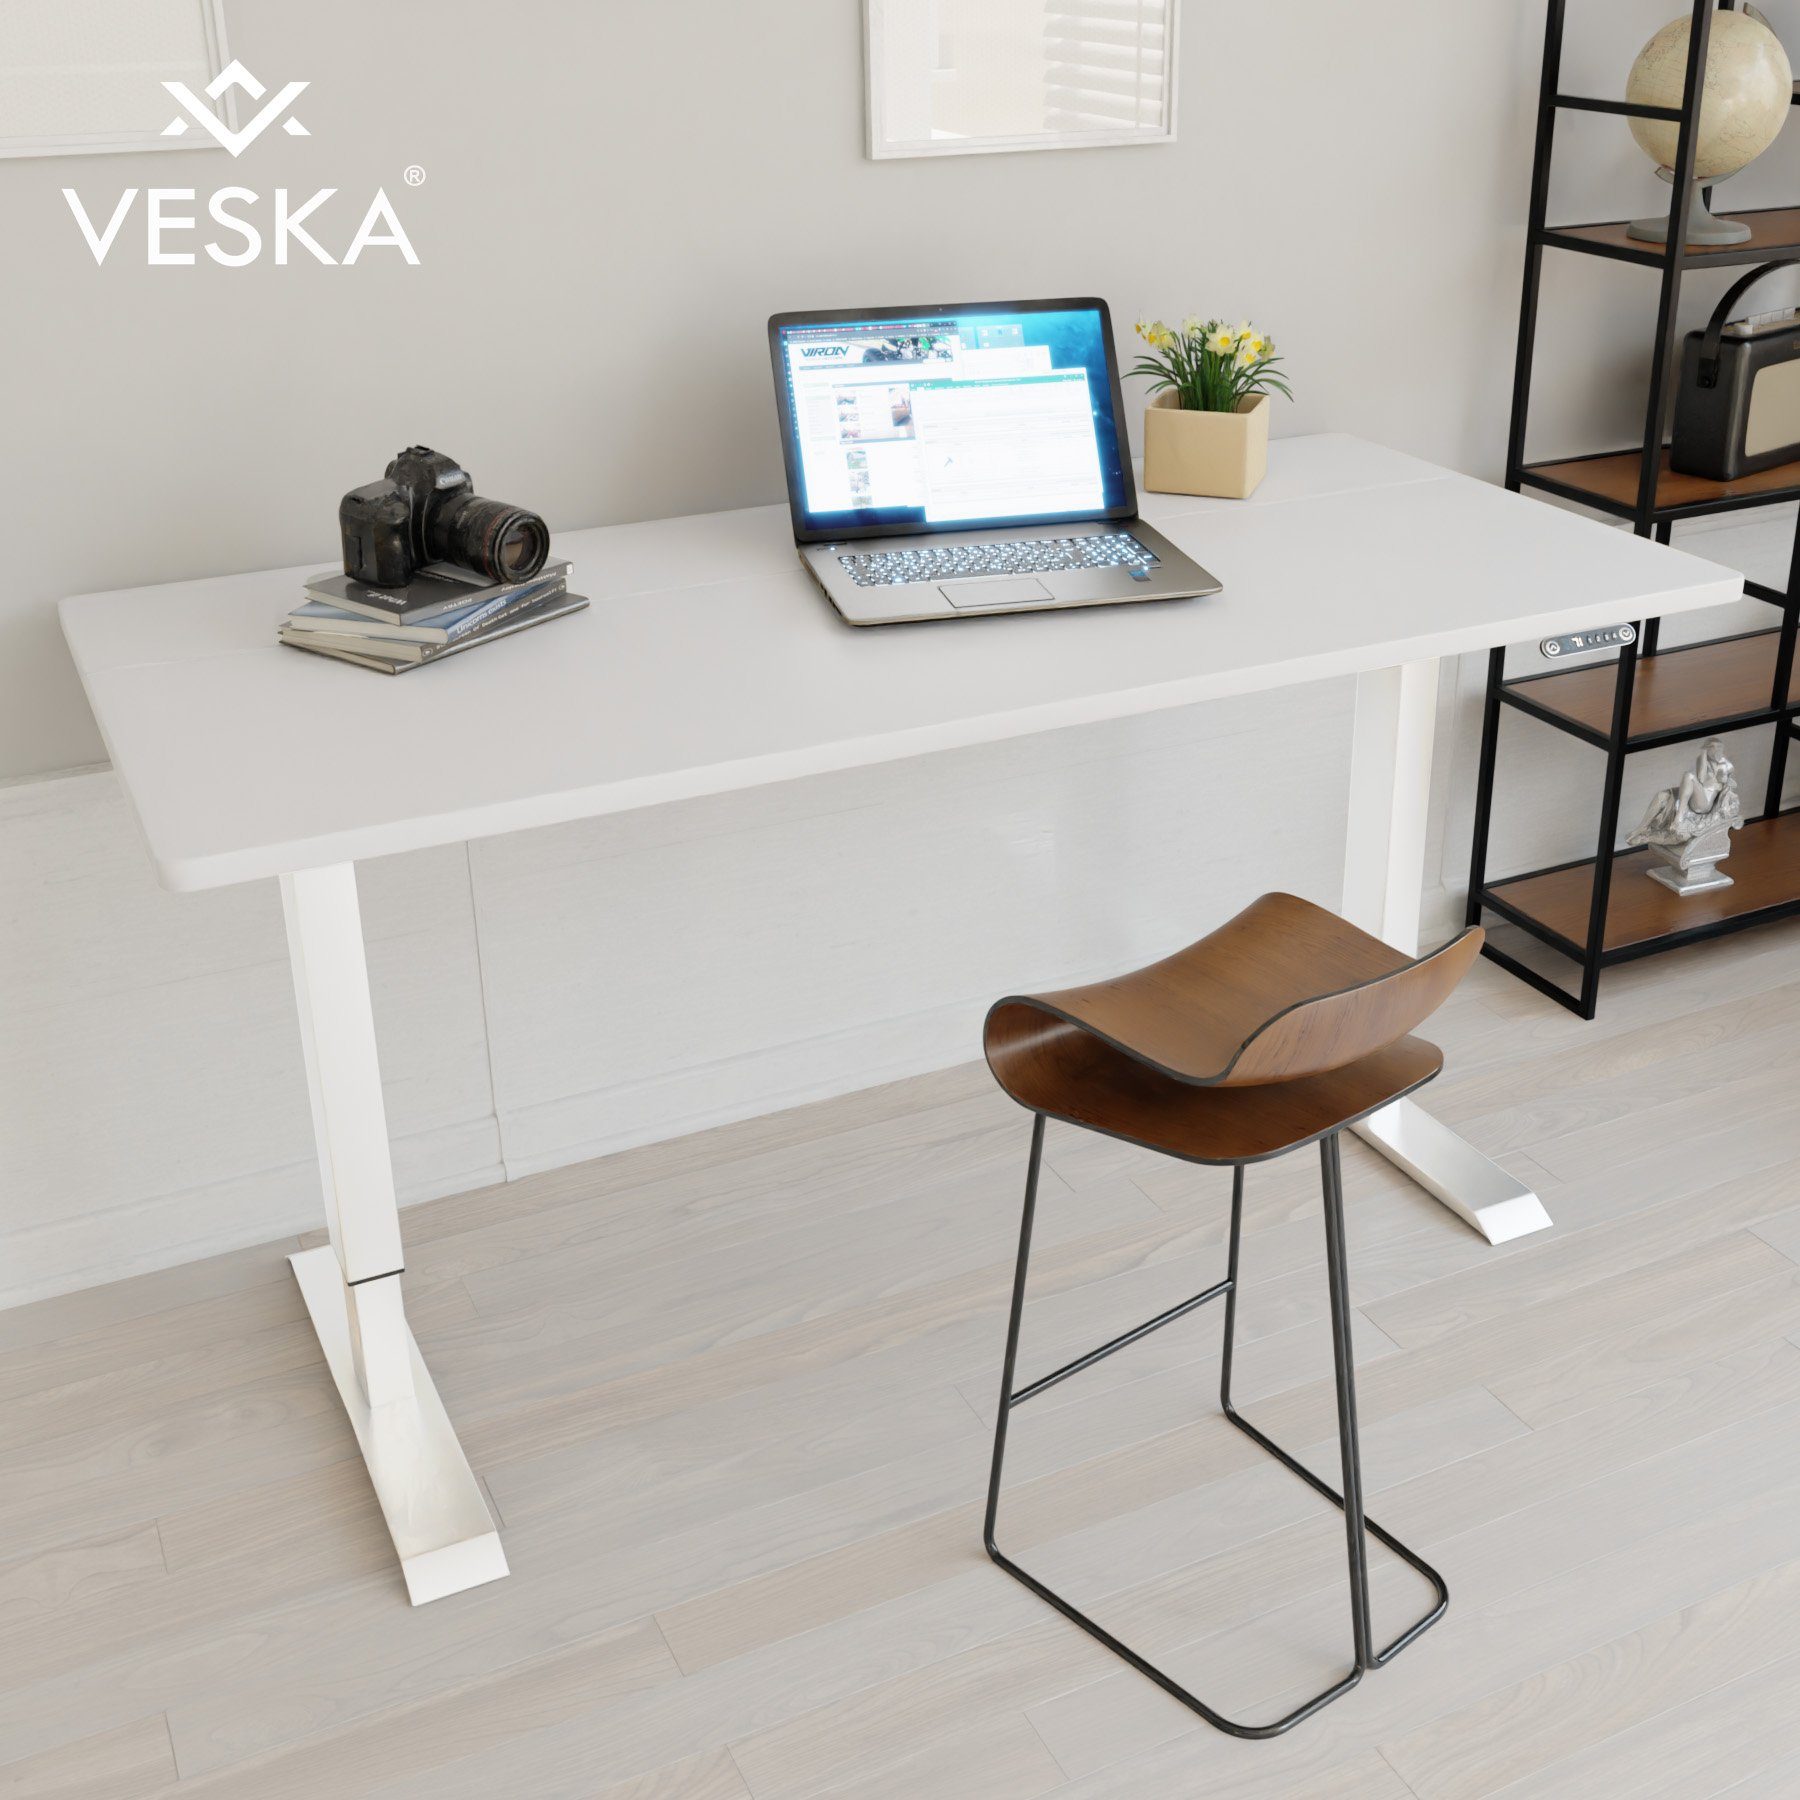 VESKA Schreibtisch Höhenverstellbar 140 x 70 cm - Bürotisch Elektrisch mit Touchscreen - Sitz- & Stehpult Home Office Weiß | Weiß